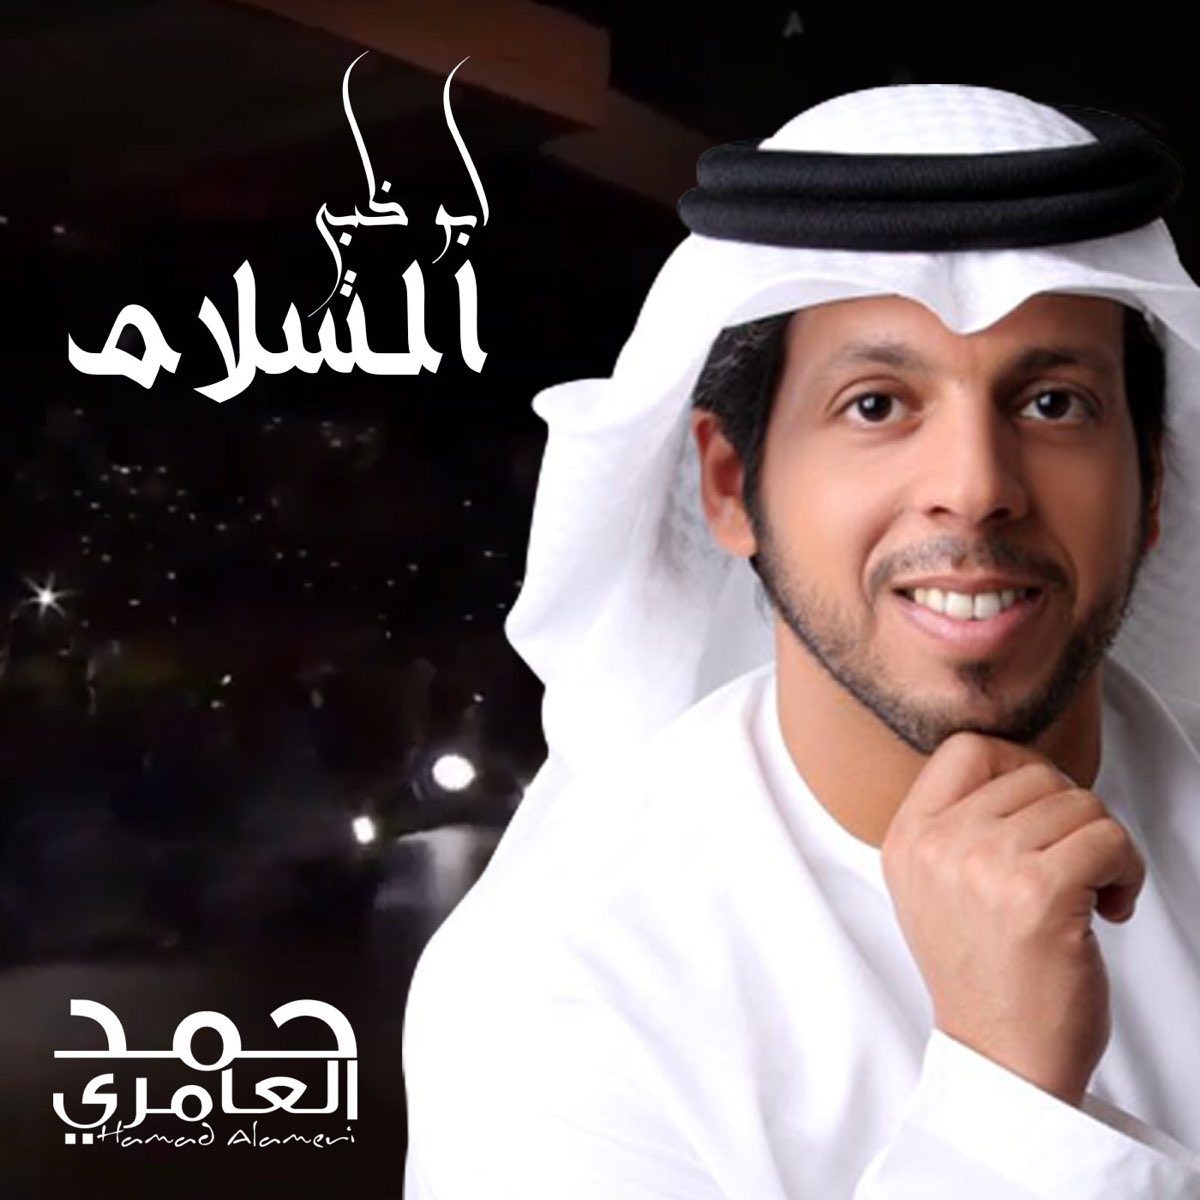 أبو ظبي السلام - Single par Hamad Al Ameri sur Apple Music